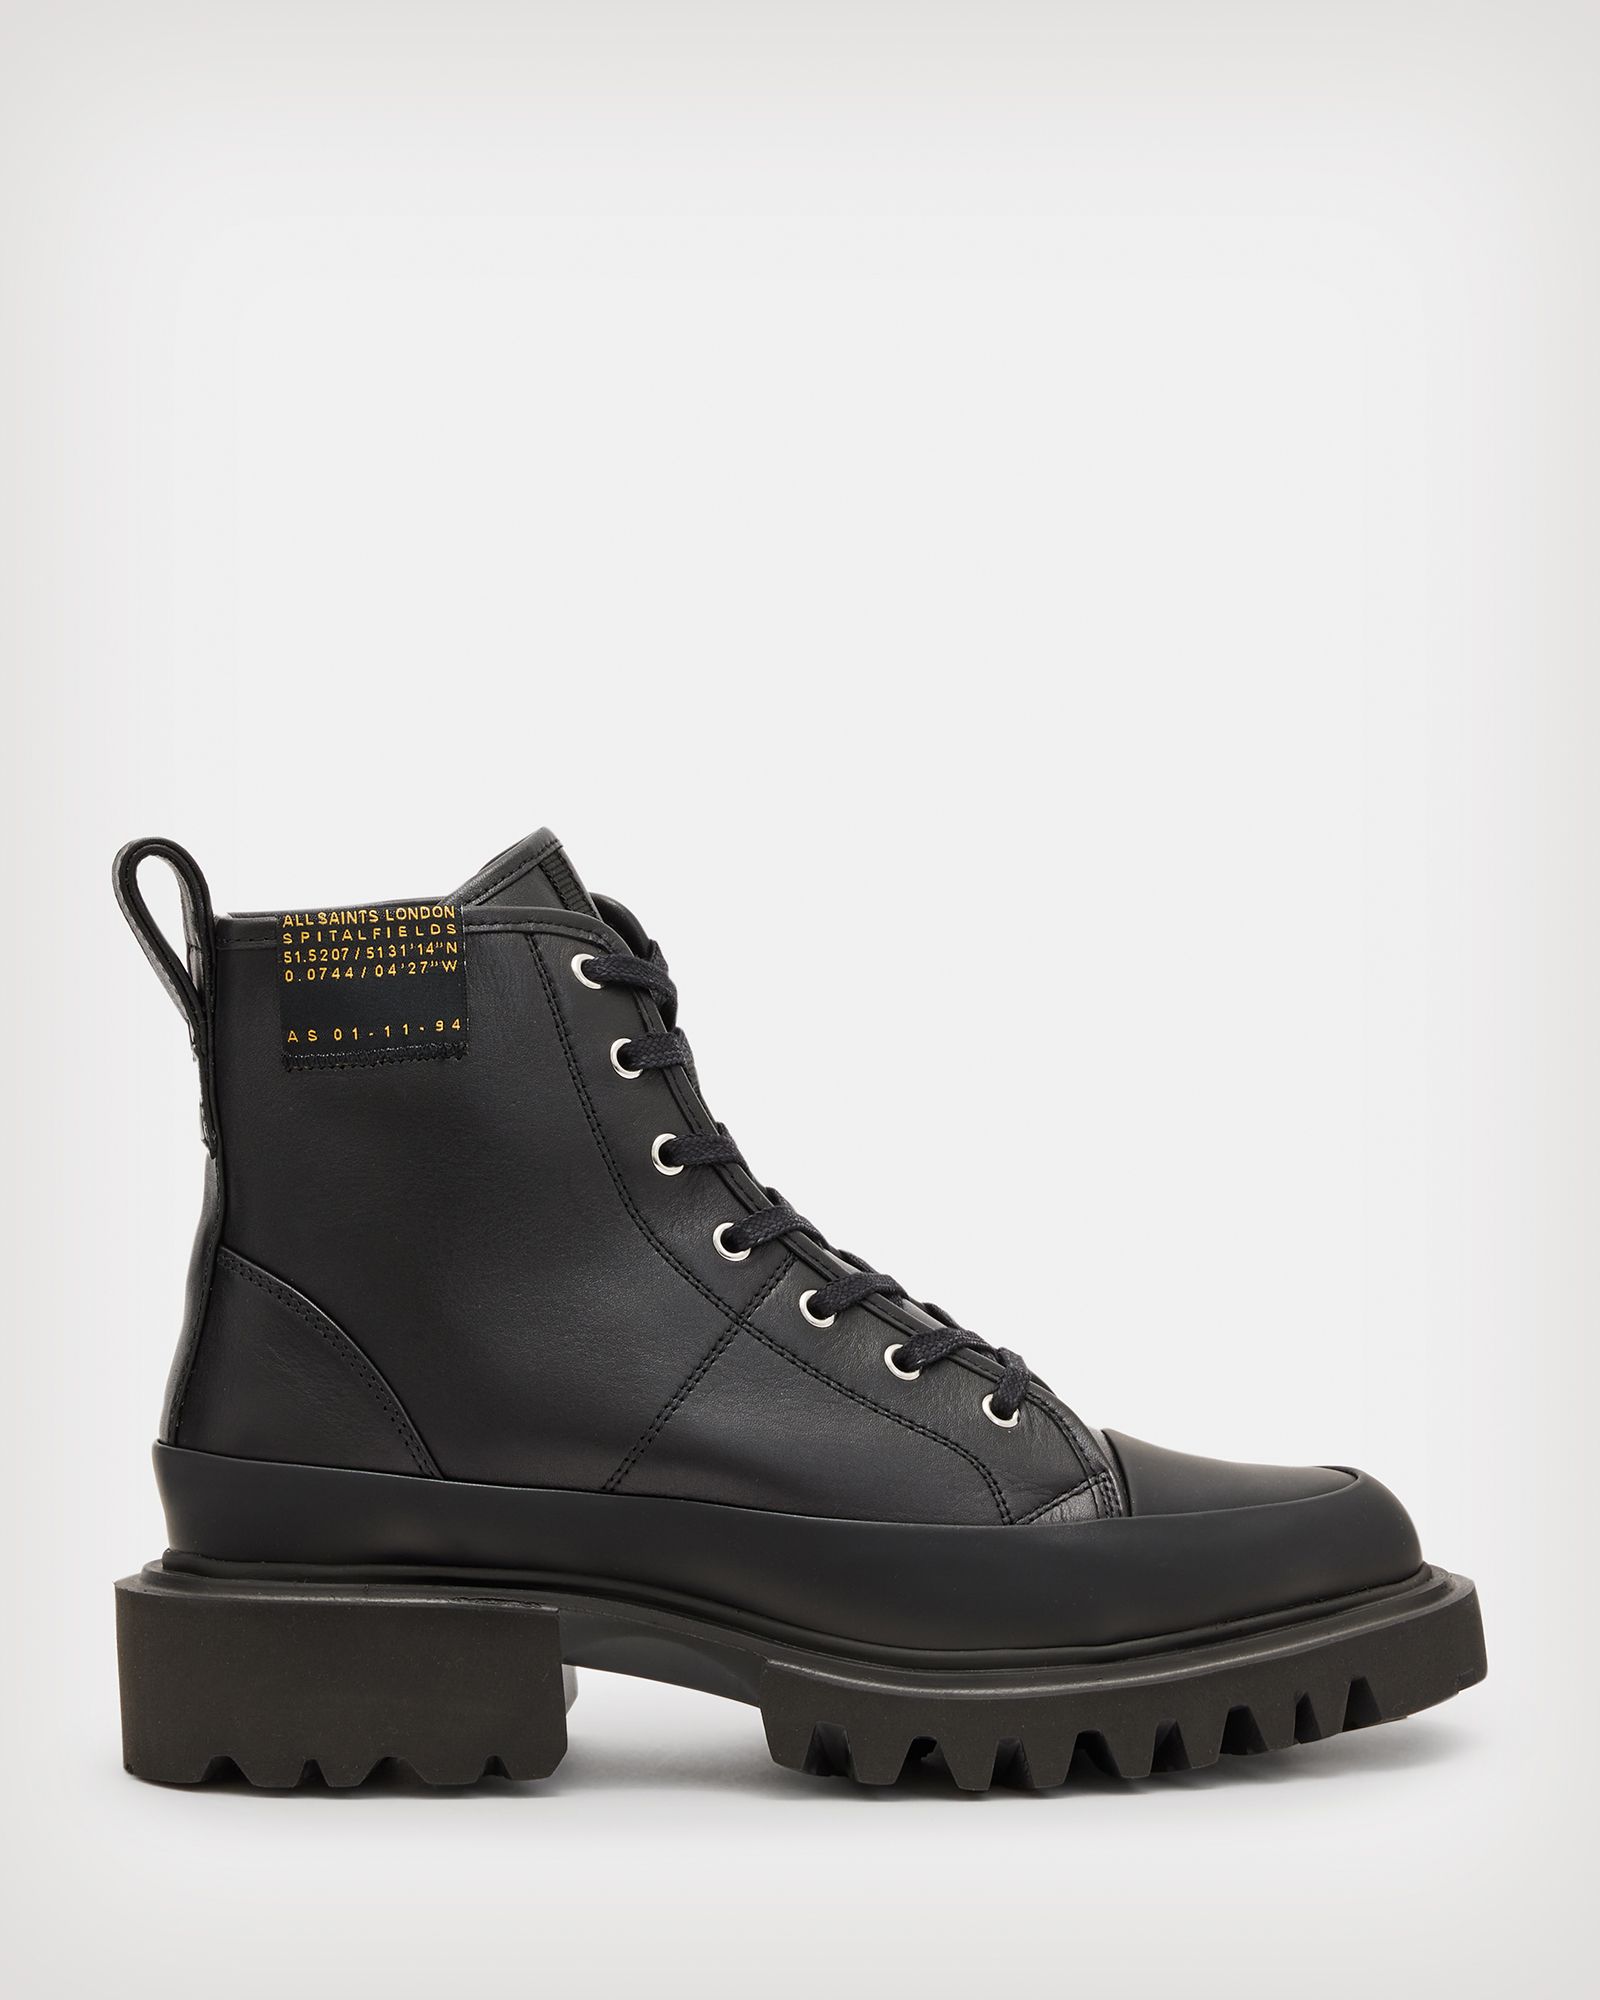 Myla Leather Combat Boots | AllSaints US